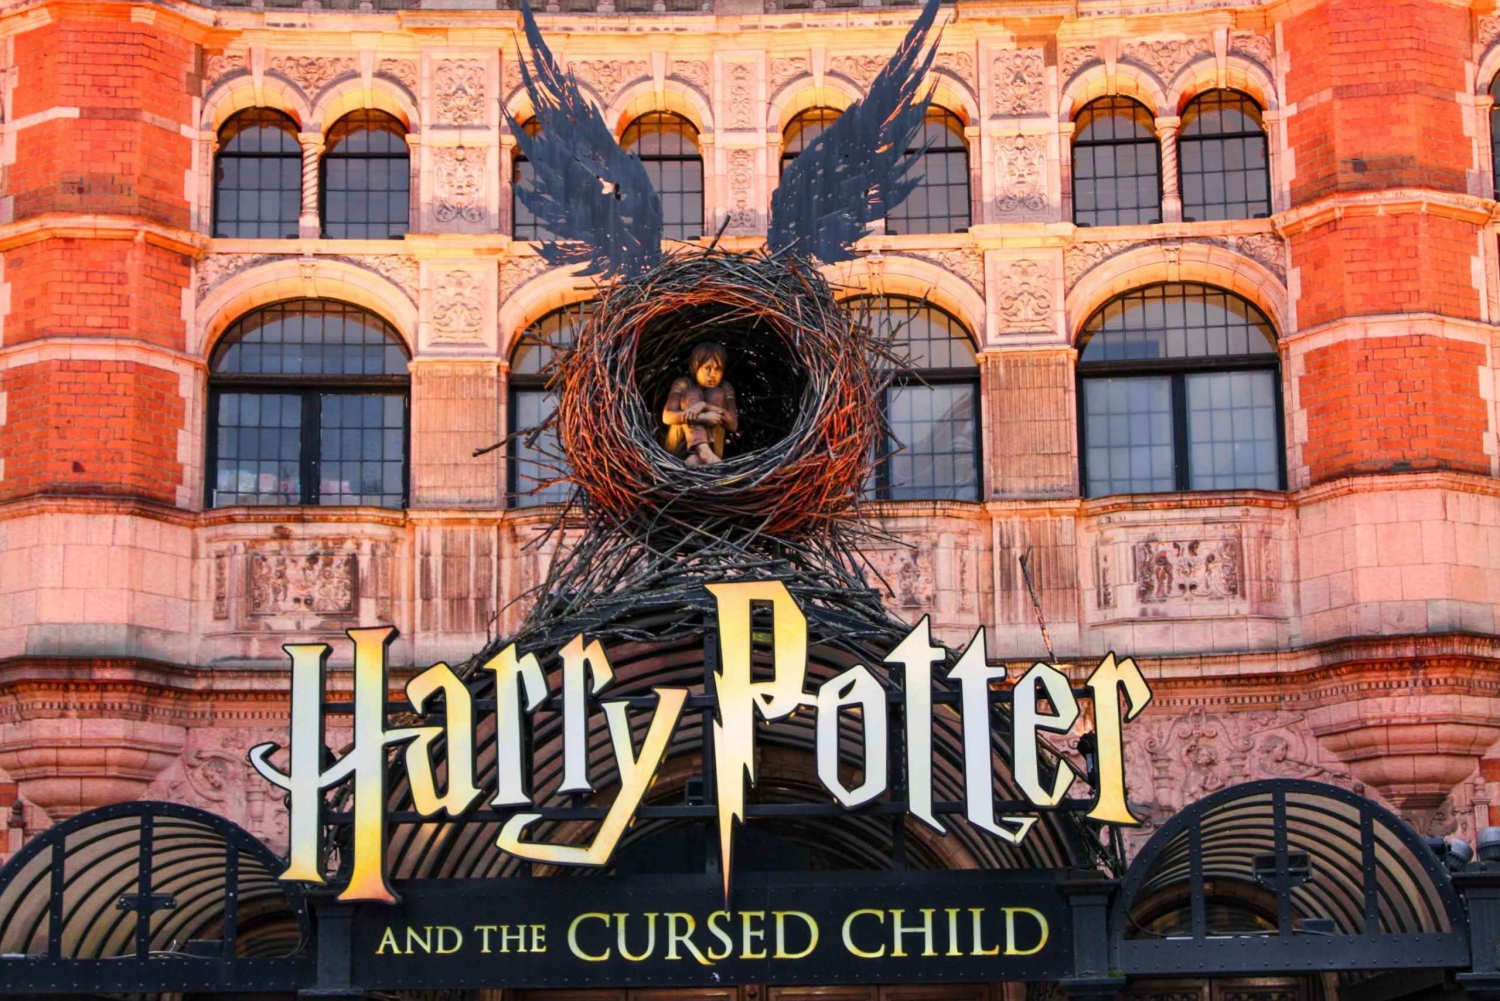 London: Sightseeingtur til Harry Potter og troldmandsverdenen